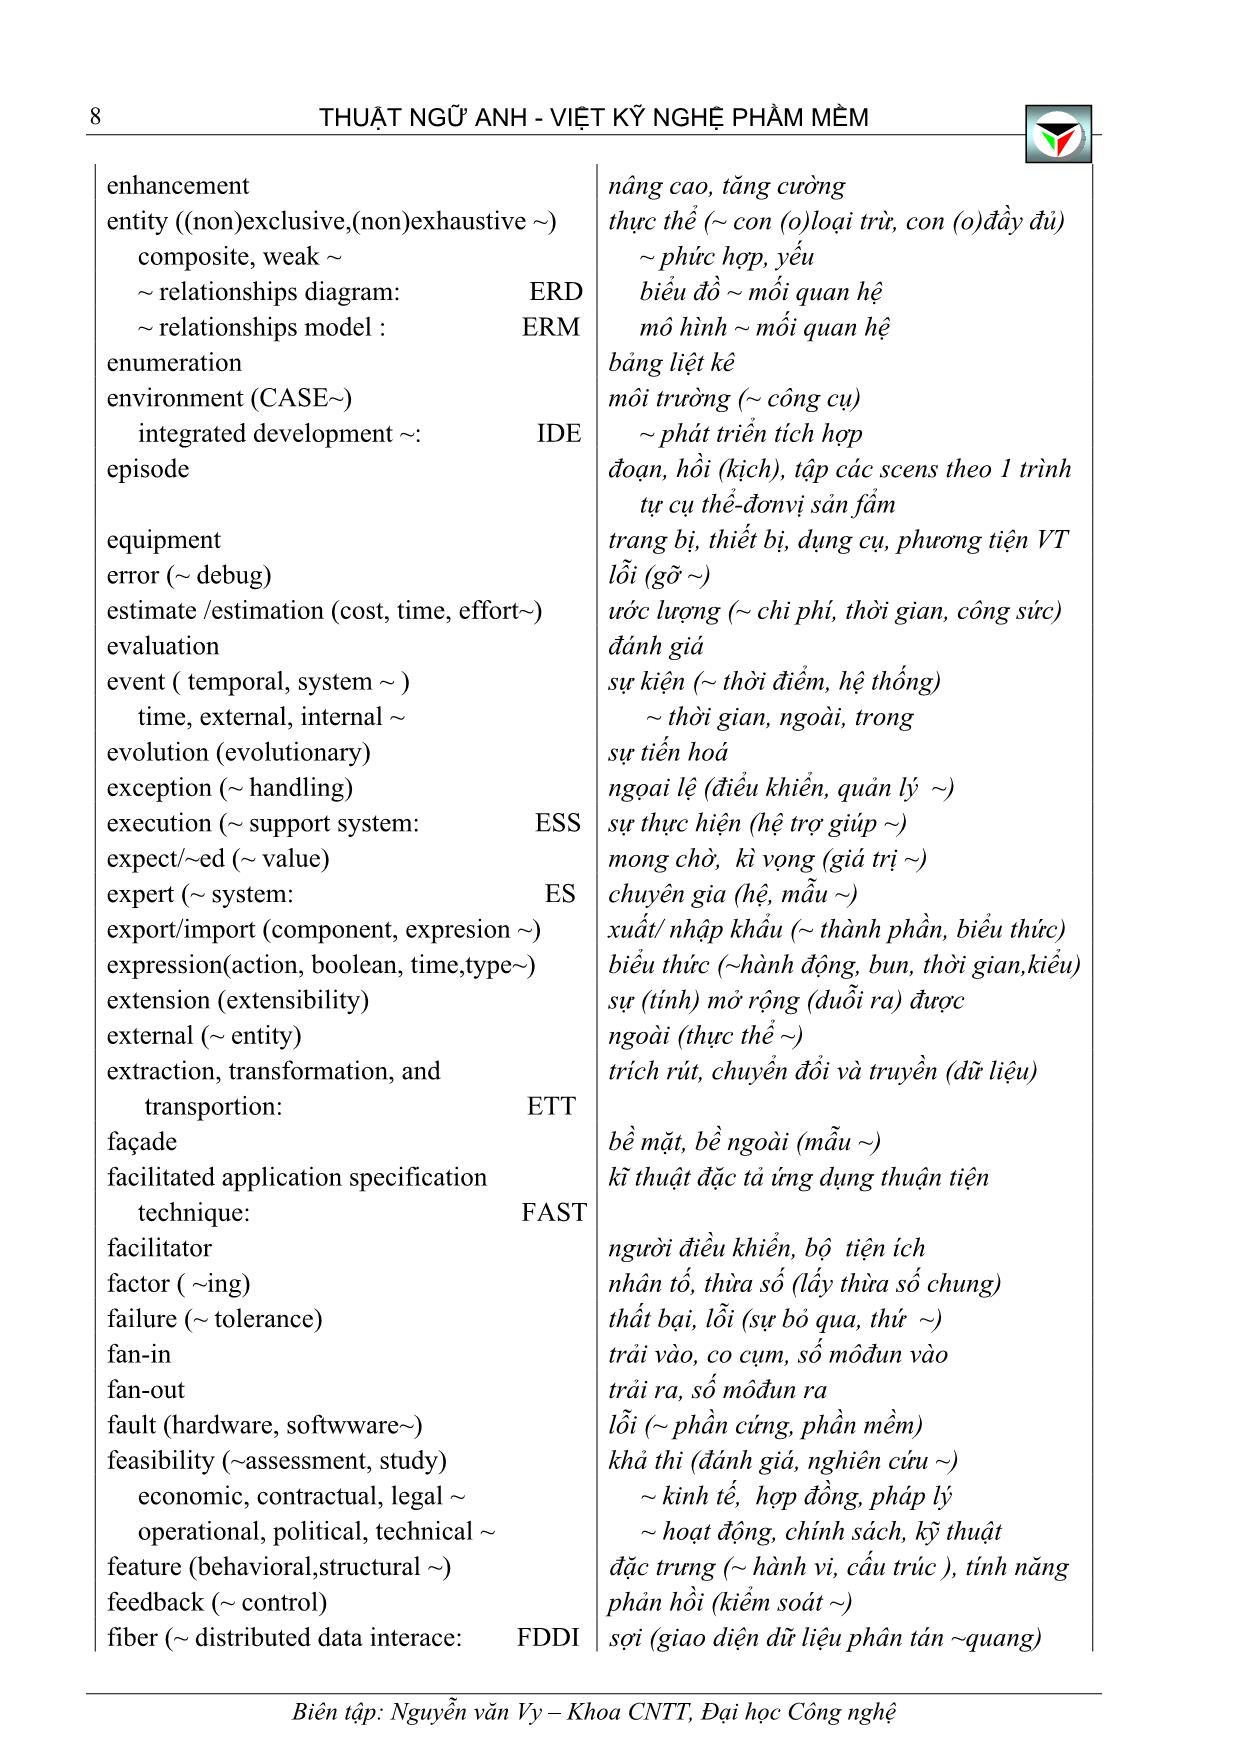 Thuật ngữ Anh - Việt kỹ nghệ phầm mềm trang 8